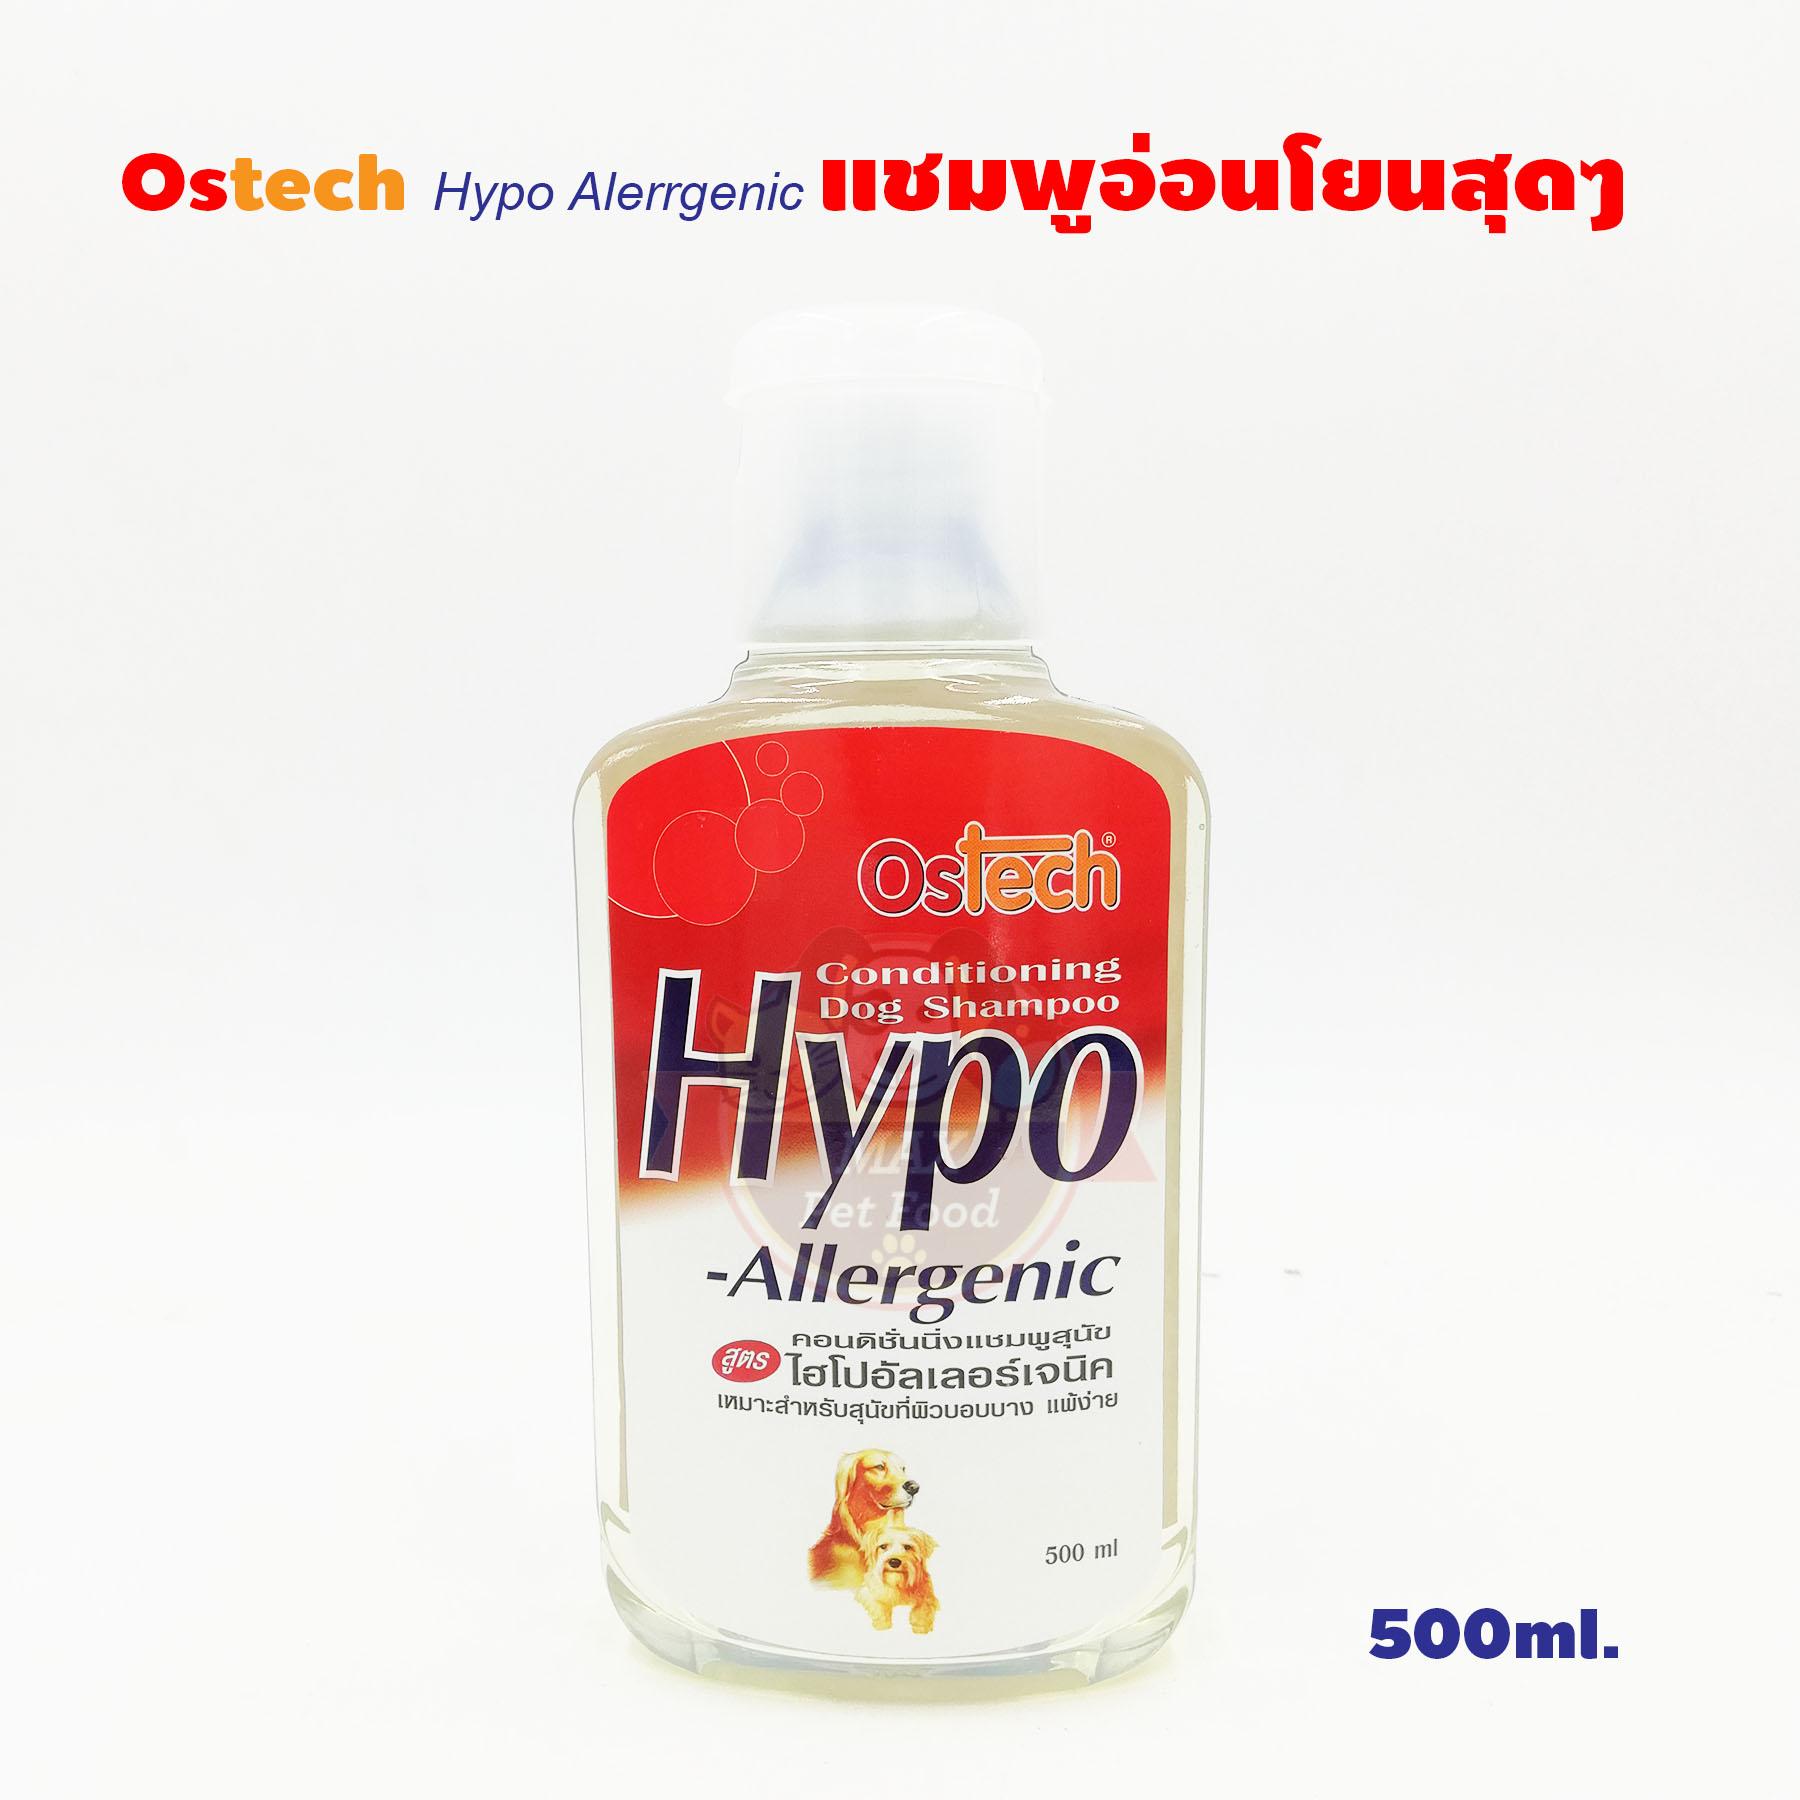 Ostech Hypo Alerrgenic แชมพูอ่อนโยนสุดๆ 500 ml 1 ขวด